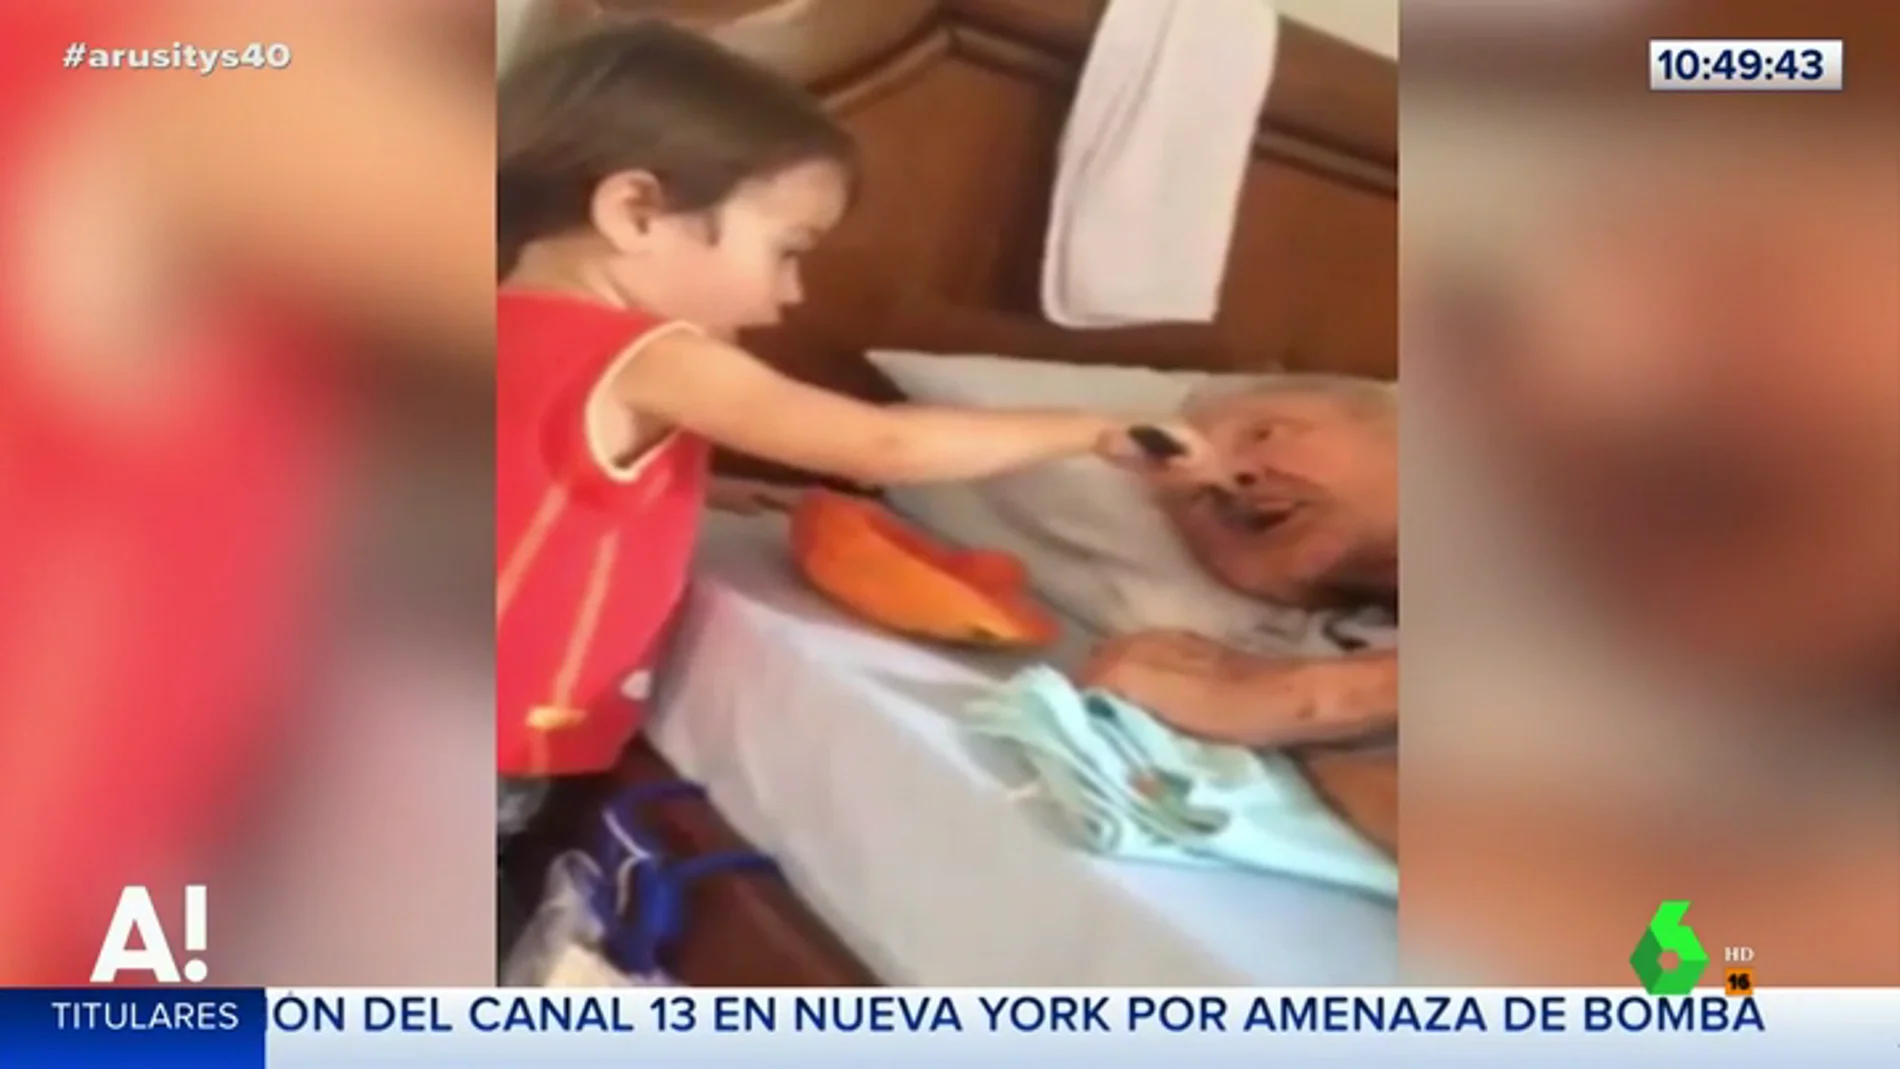 El conmovedor gesto de un niño dando de comer a su abuelo en la cama que ha enternecido a las redes sociales